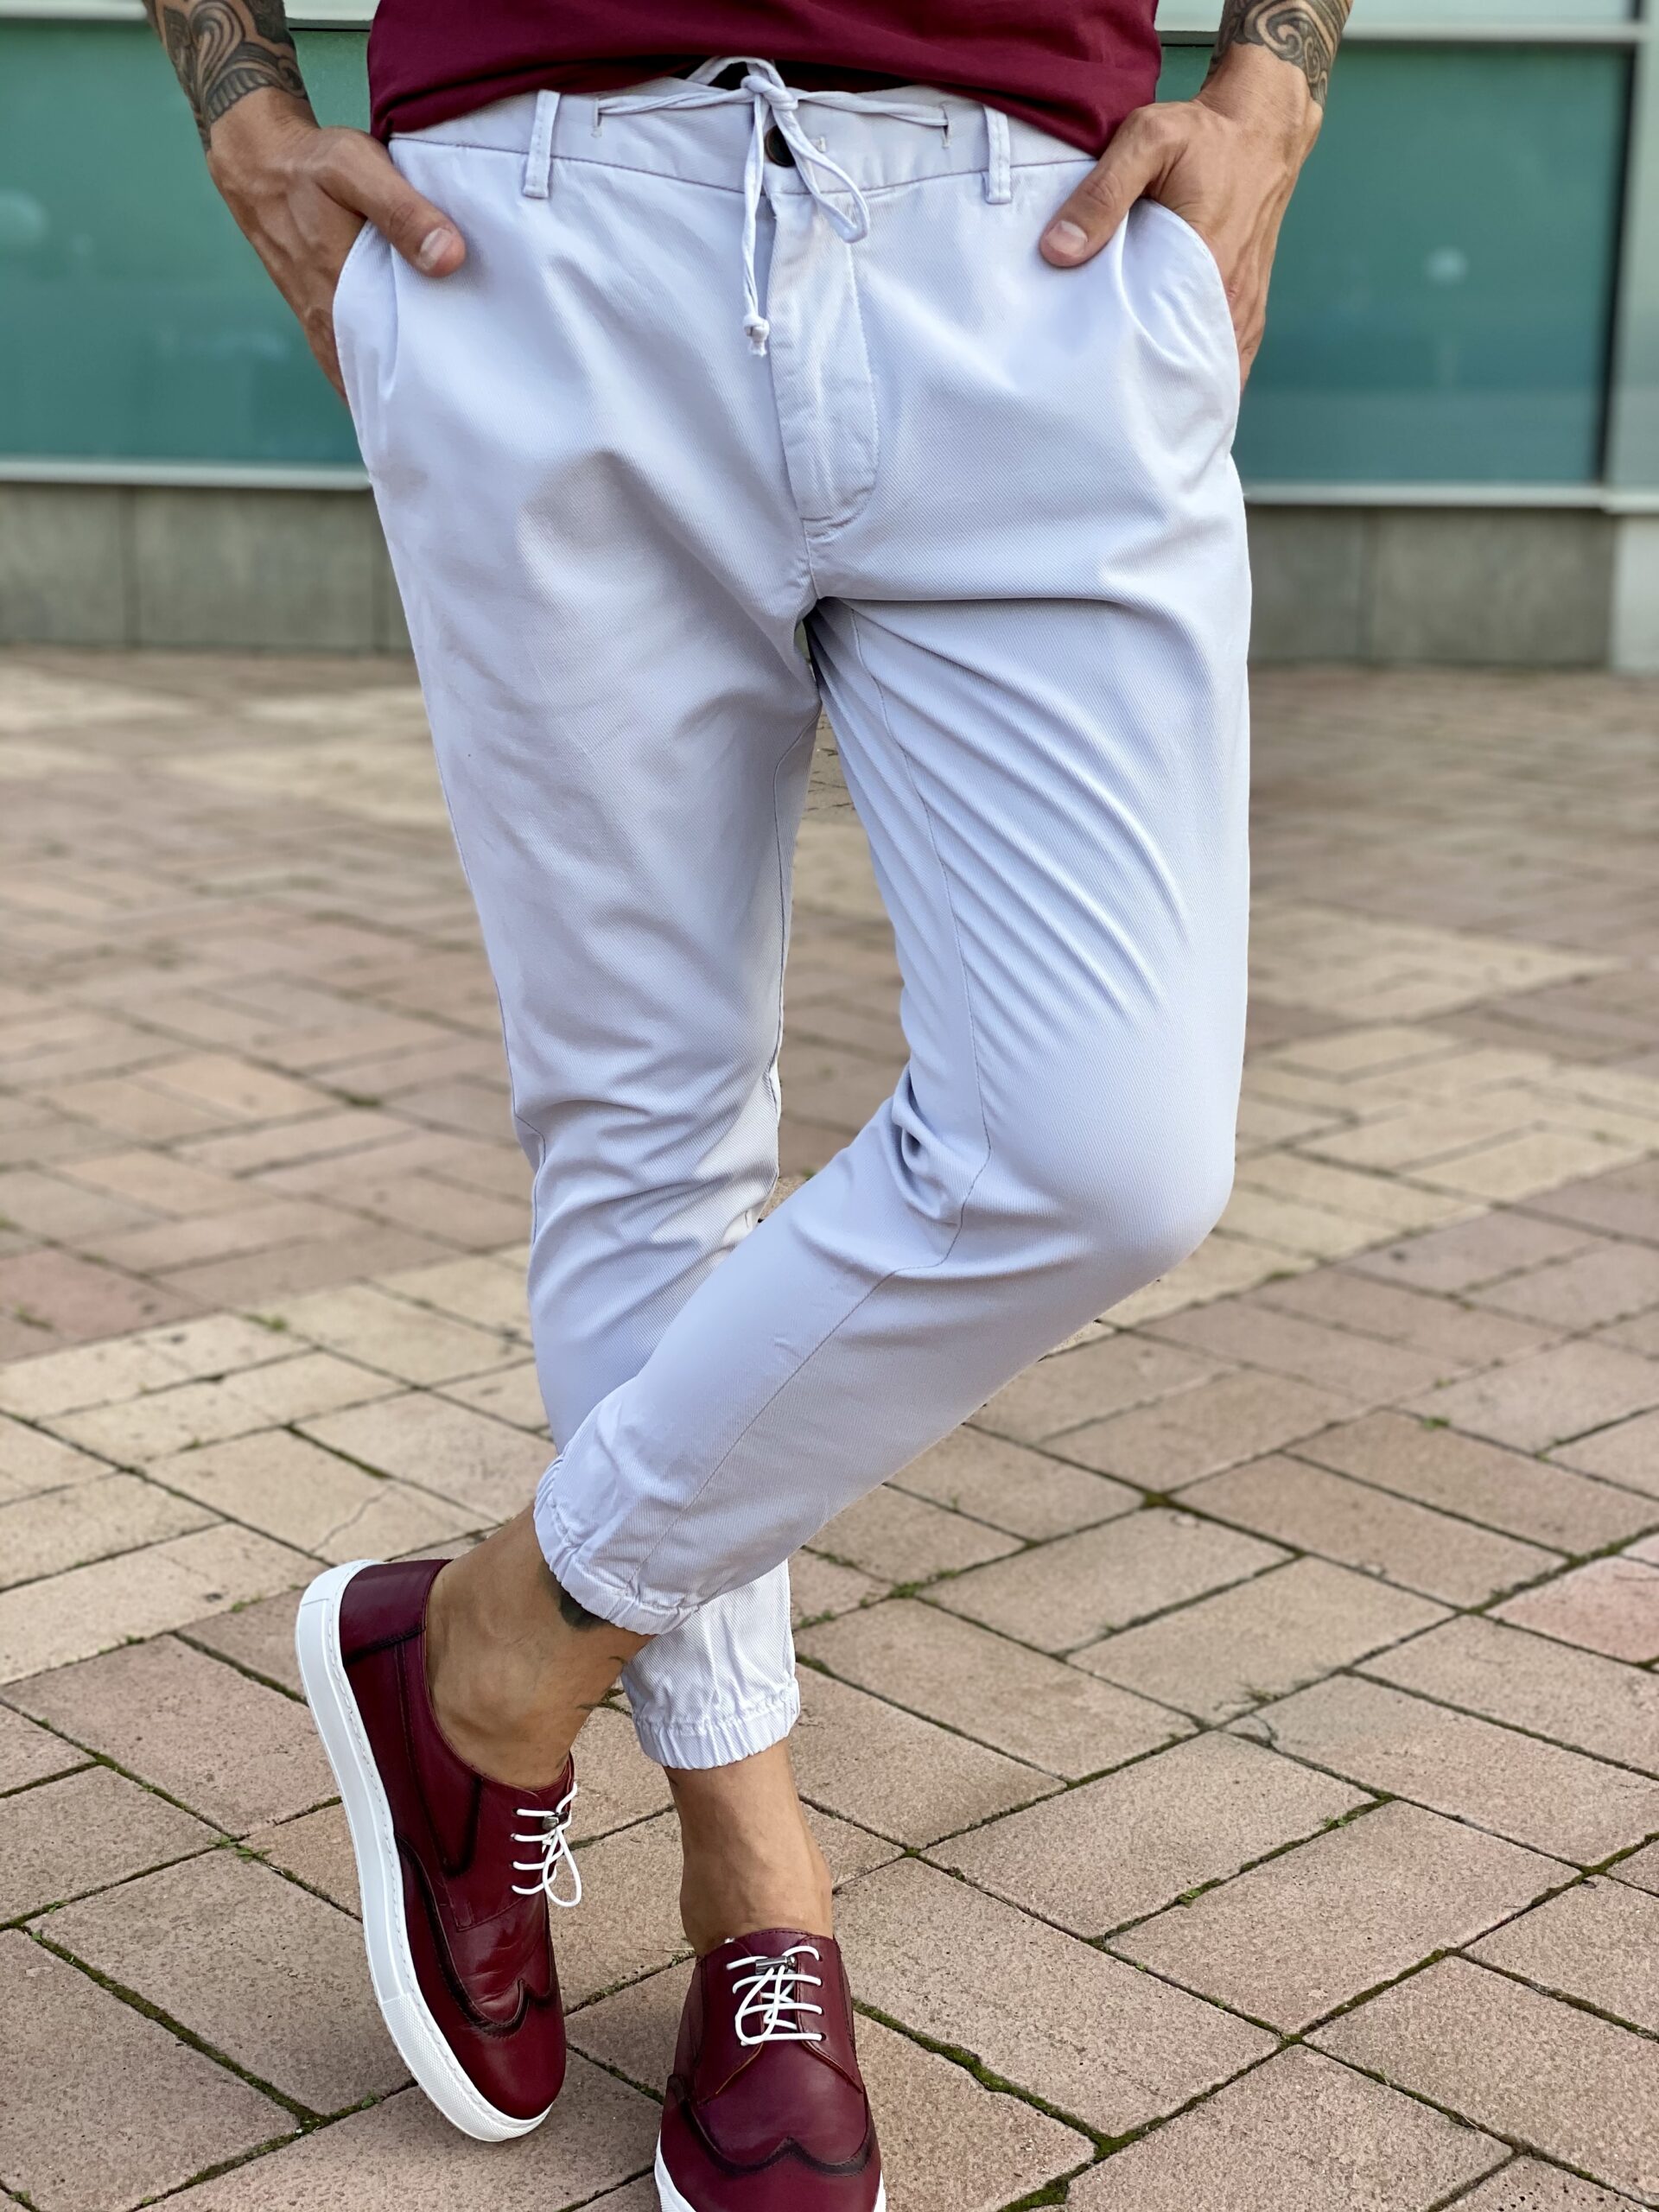 Белые брюки в стиле спорт-шик. Арт.: 2475 – купить в магазине мужскойодежды Smartcasuals